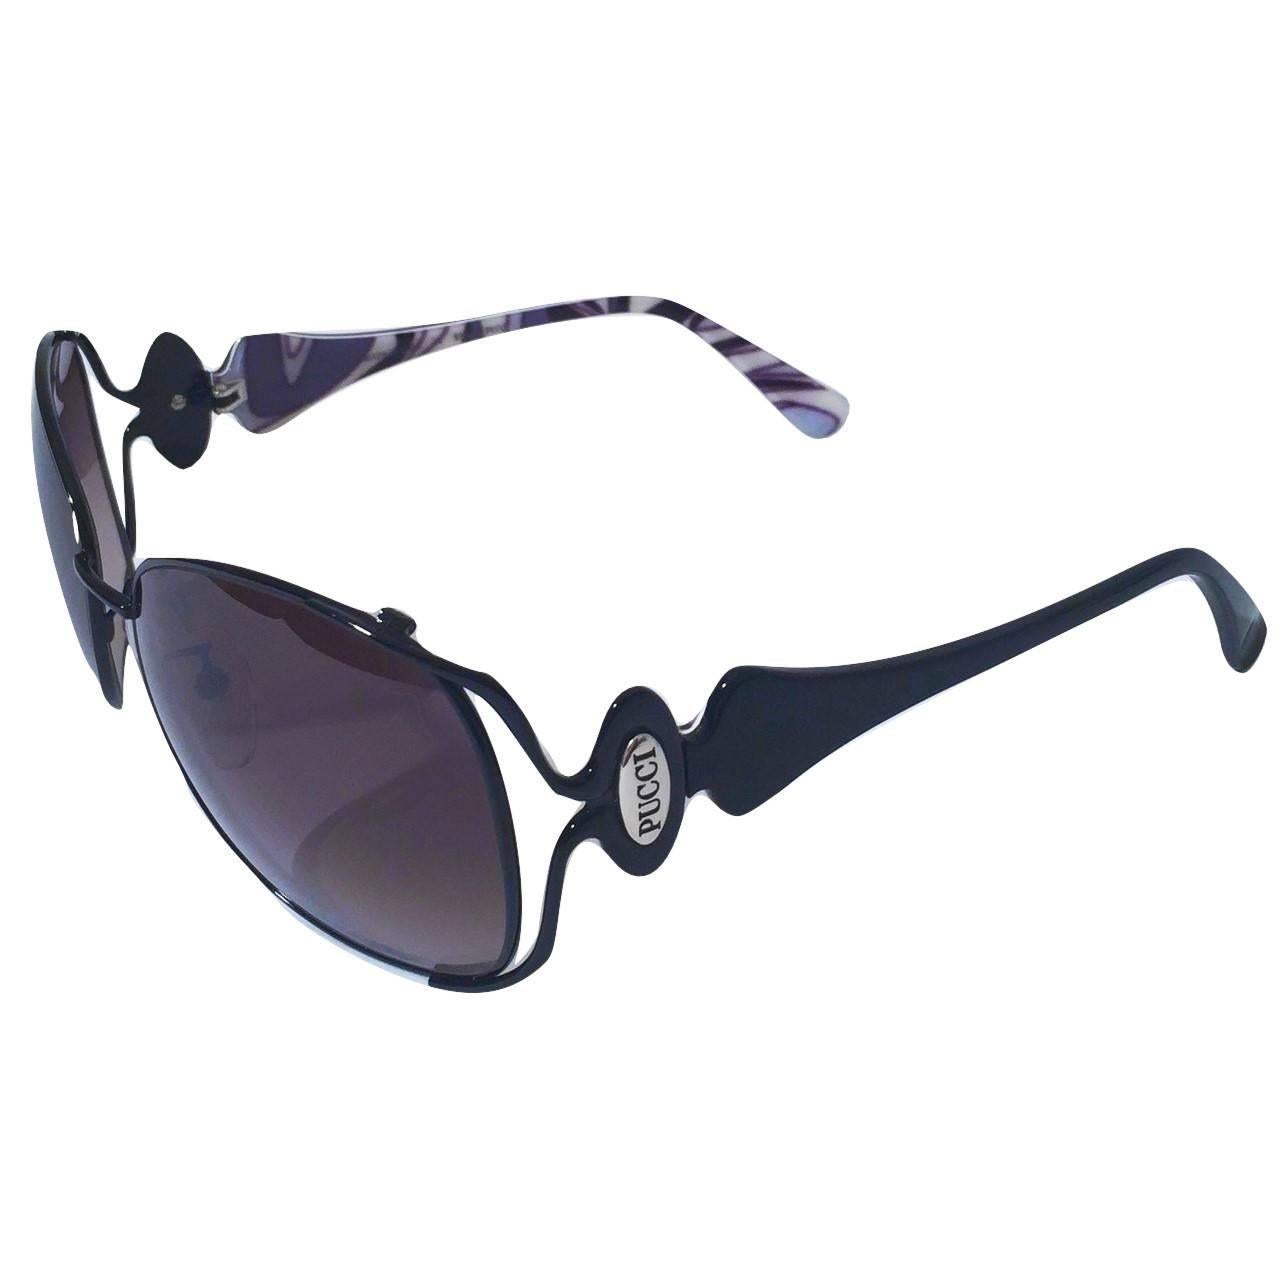 New Emilio Pucci Black Aviator Sunglasses With Case & Box 8